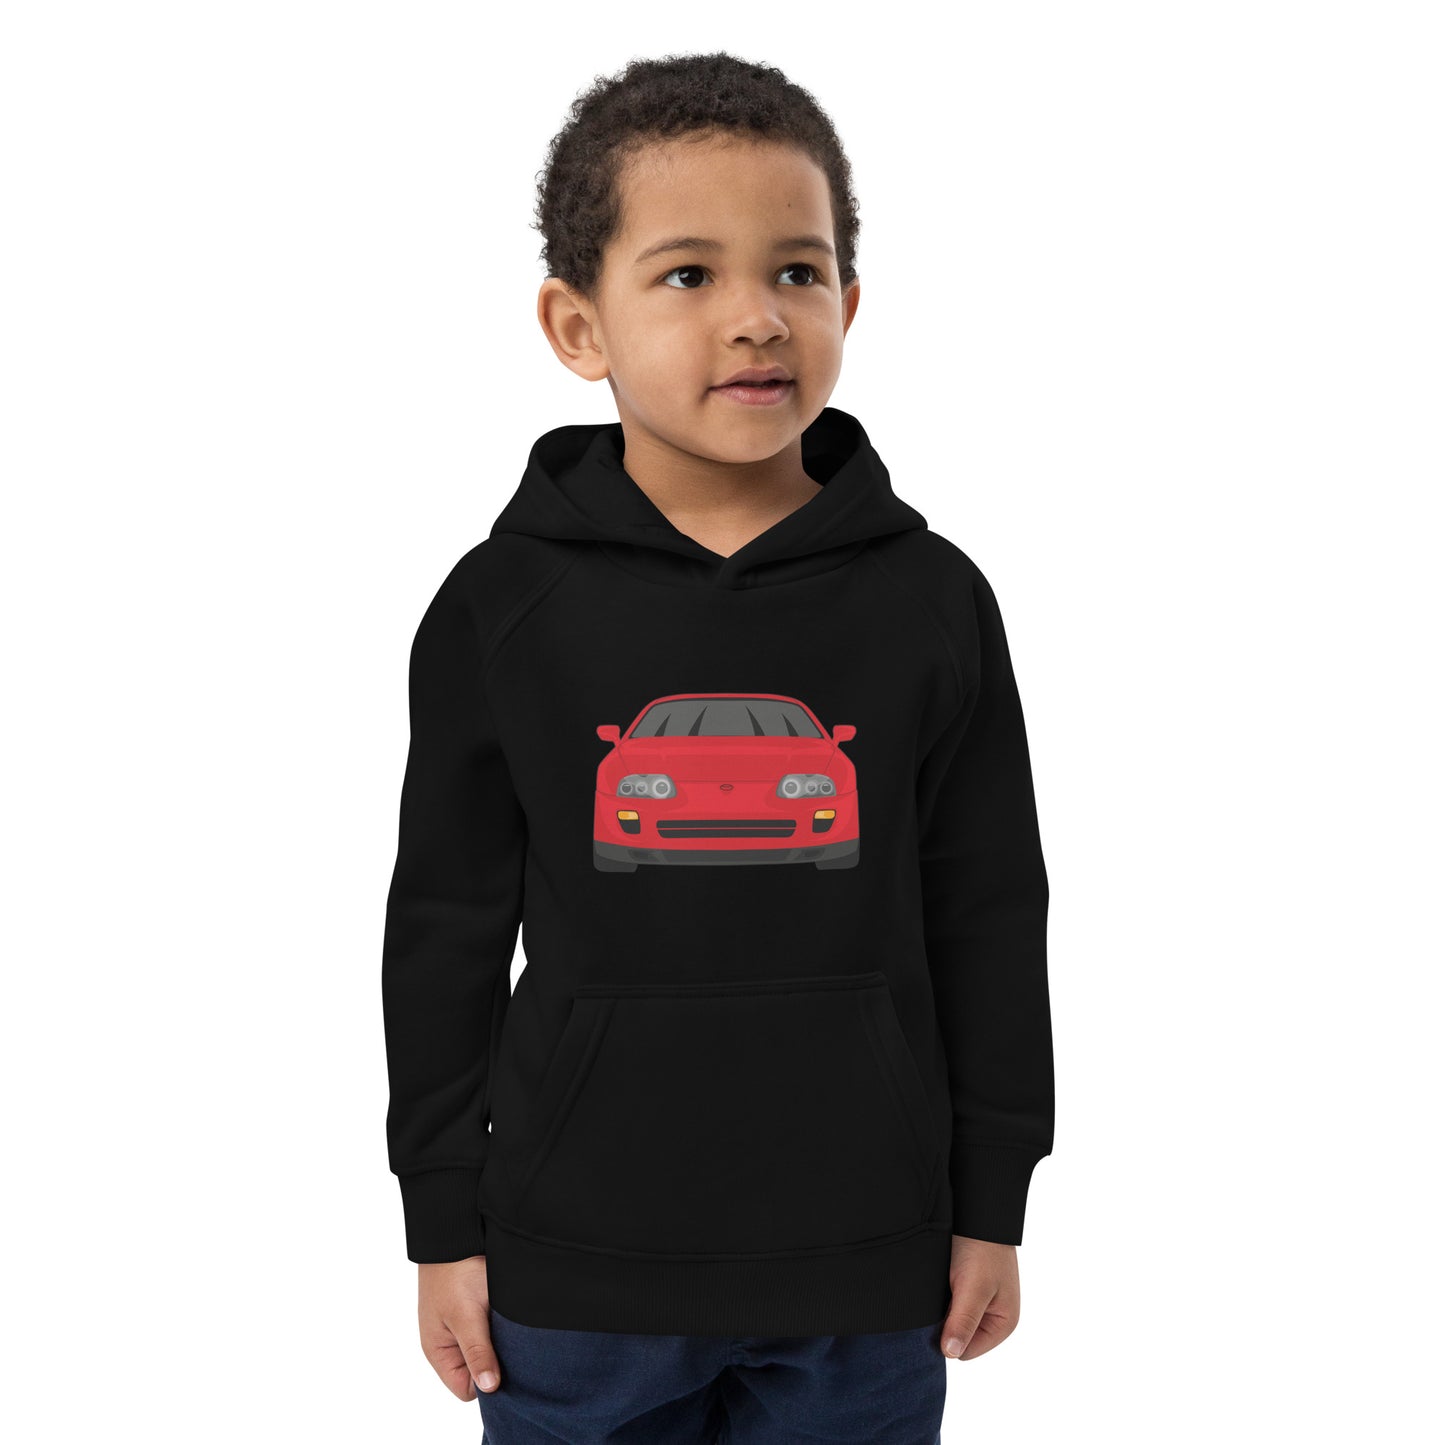 Toyota Supra MK4 "Garage Days" 1 of 100 unisex kids sweatshirt